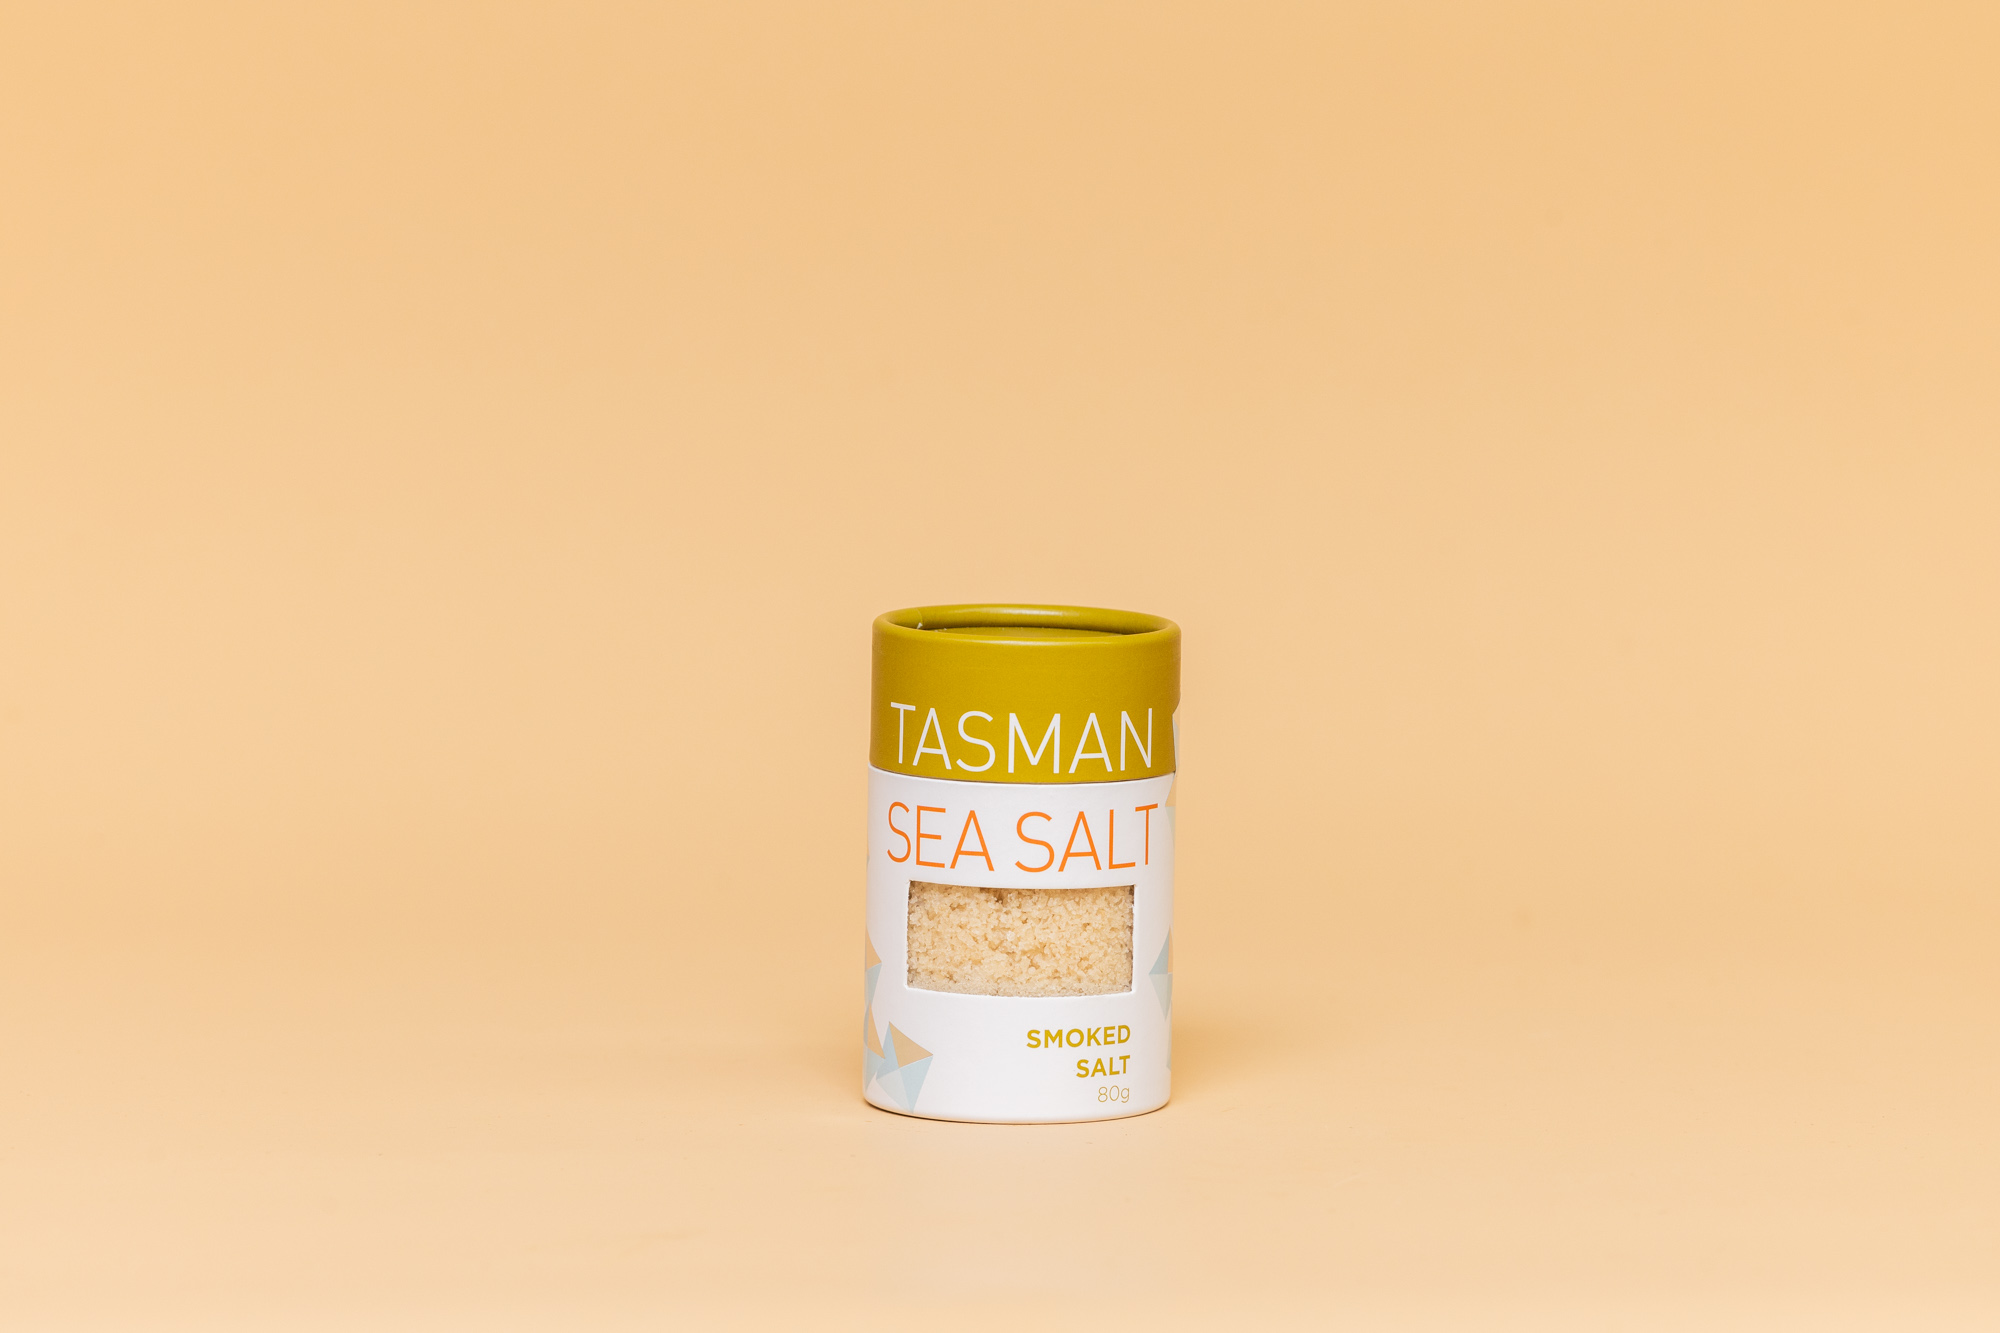 Tasman sea salt smoked 